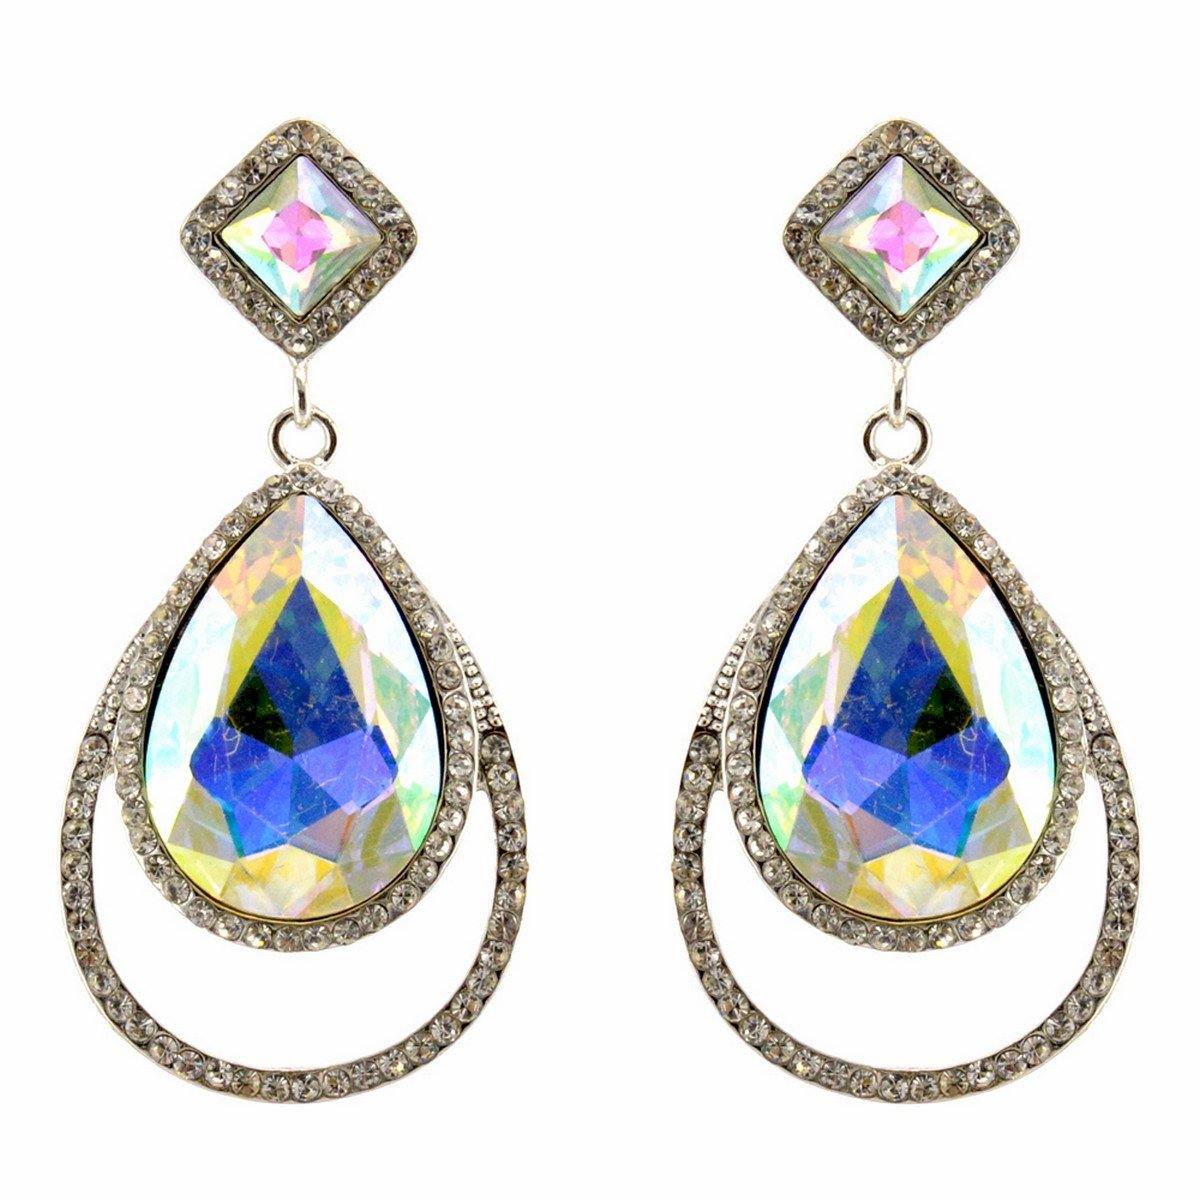 Clear Diamante Teardrop Shaped Rhinestone Earrings - The Dress Outlet